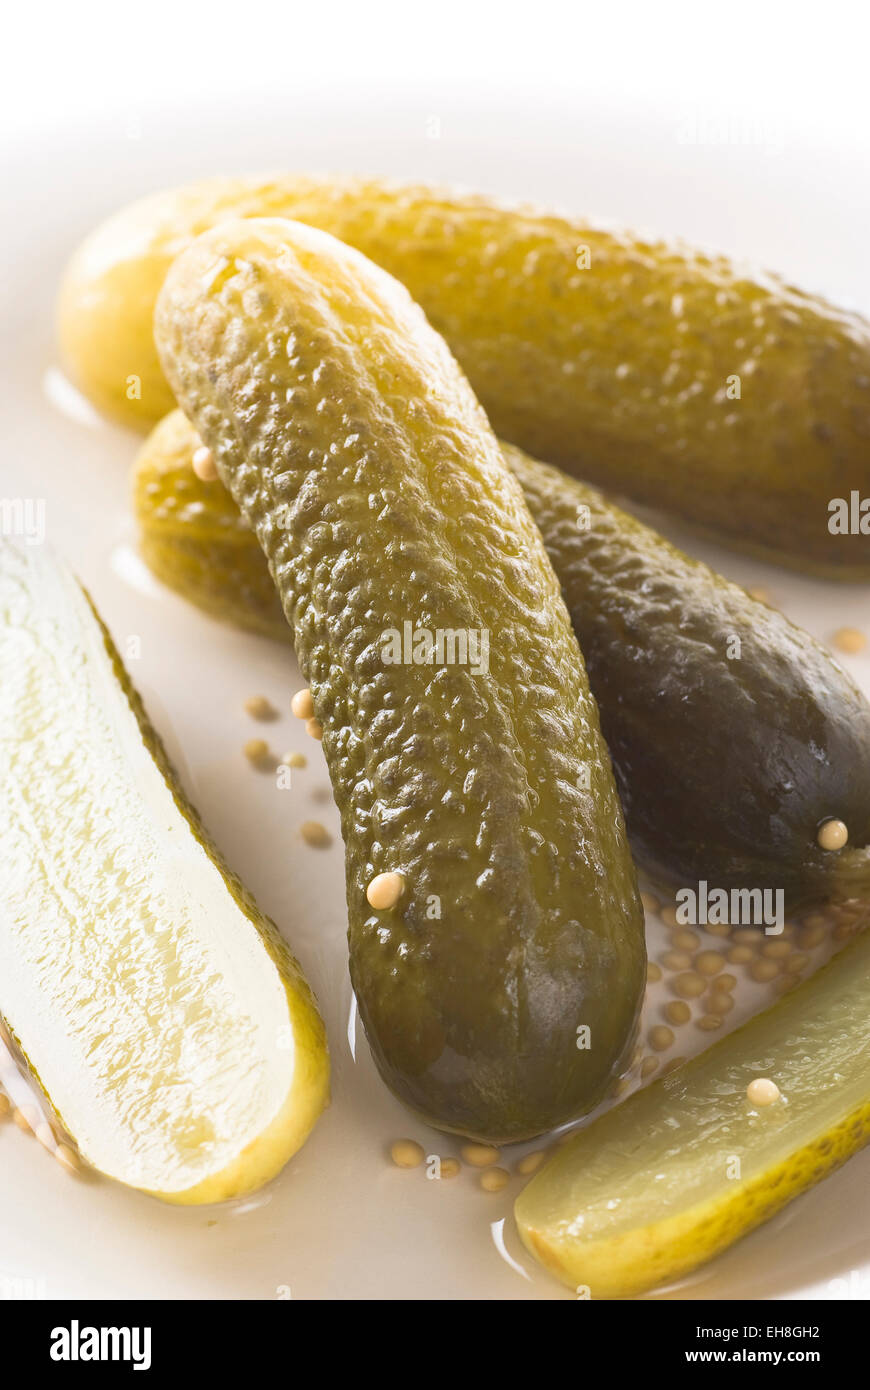 Dill pickle con semilla de mostaza en una placa. Foto de stock